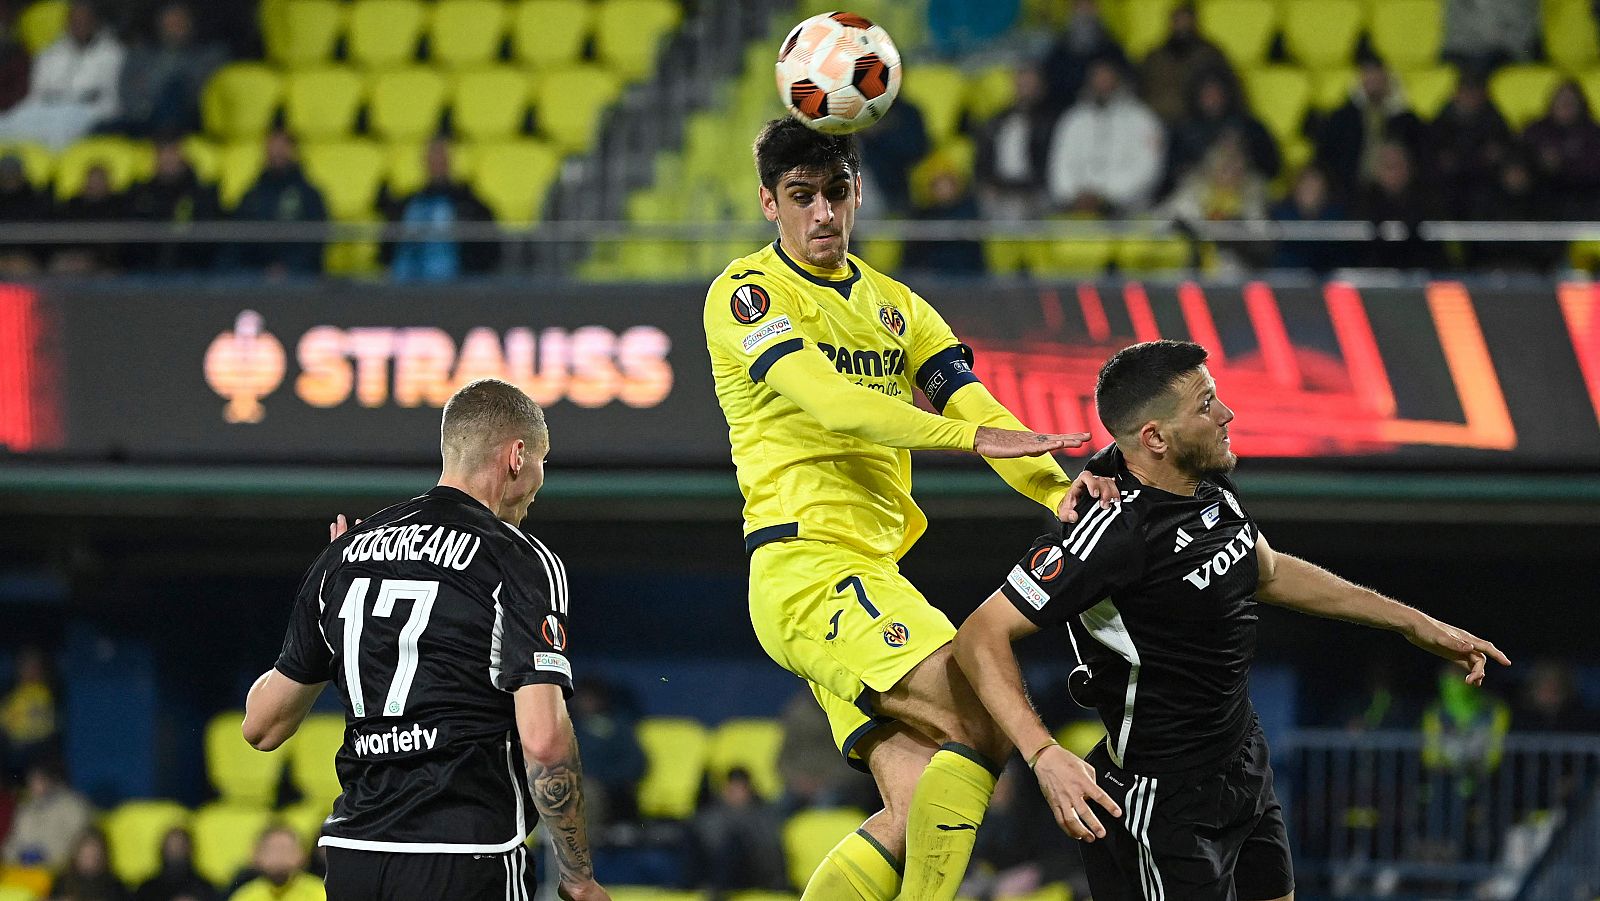 El Villarreal no pasa del empate sin goles contra el Maccabi Haifa